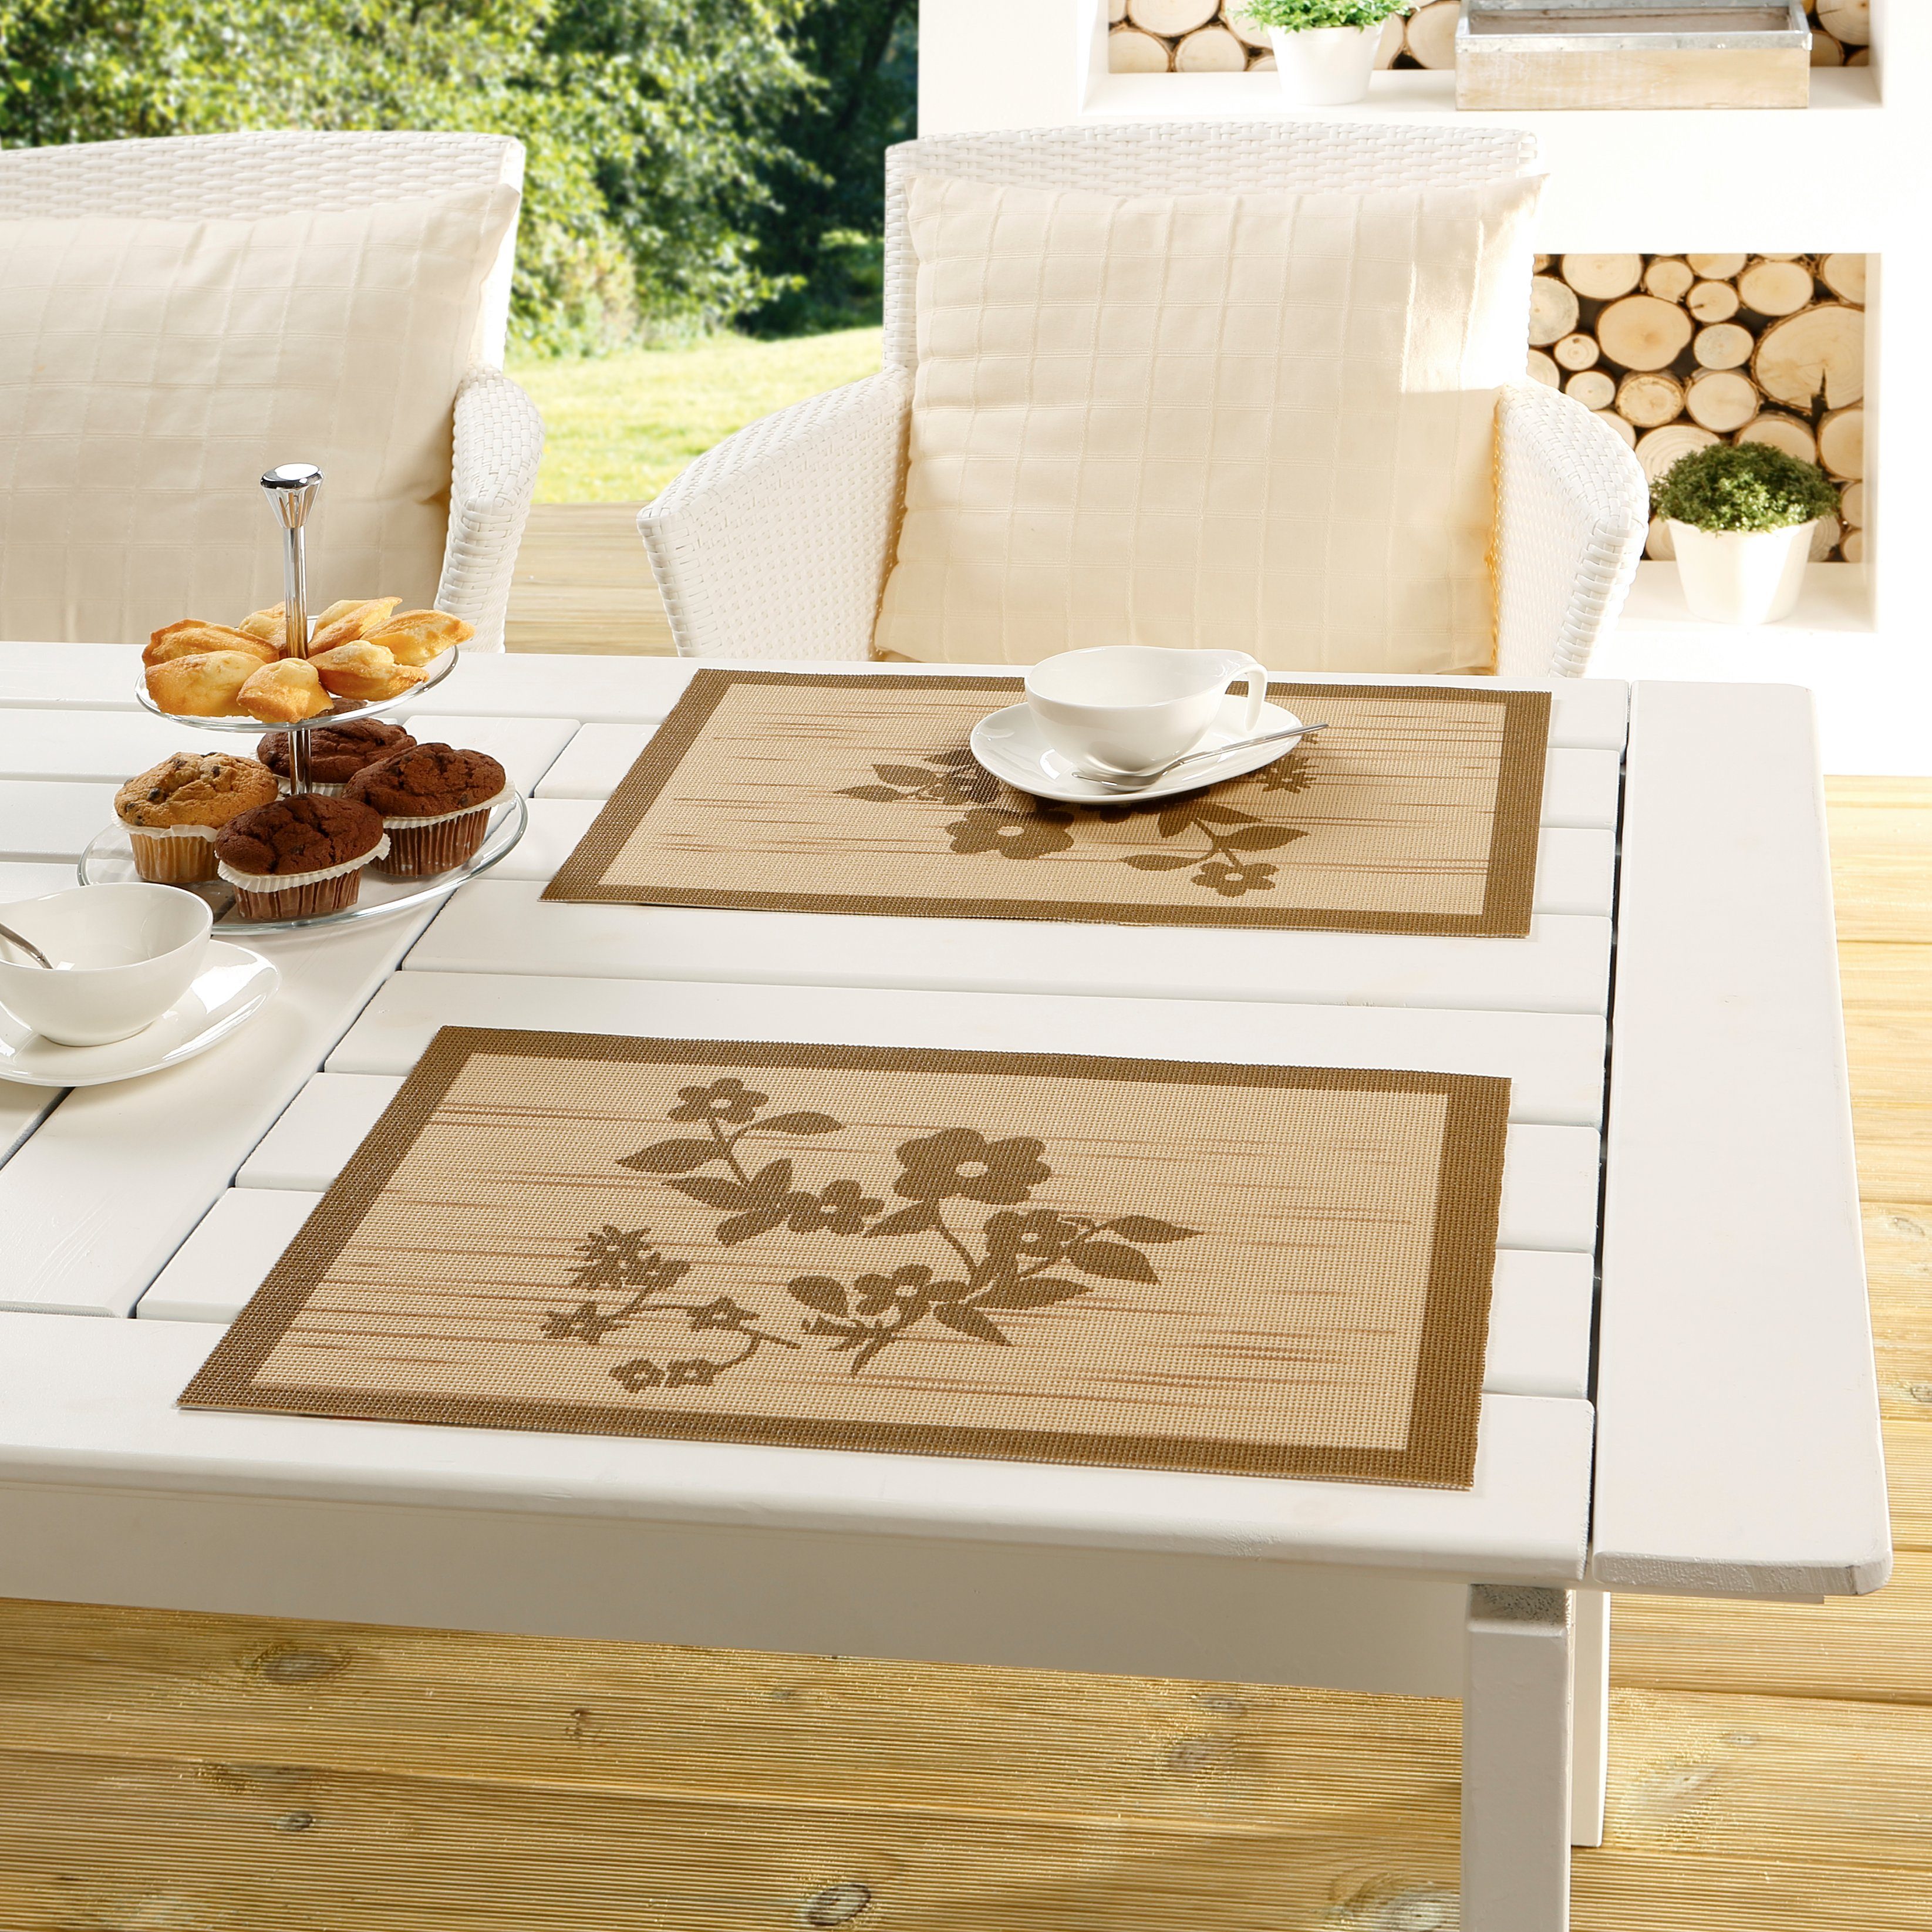 Peyer Syntex Gartentischdecke Tischset Borkum-Uni silber 30 x 45 cm 2er Pack, geschnitten Mocca-Beige